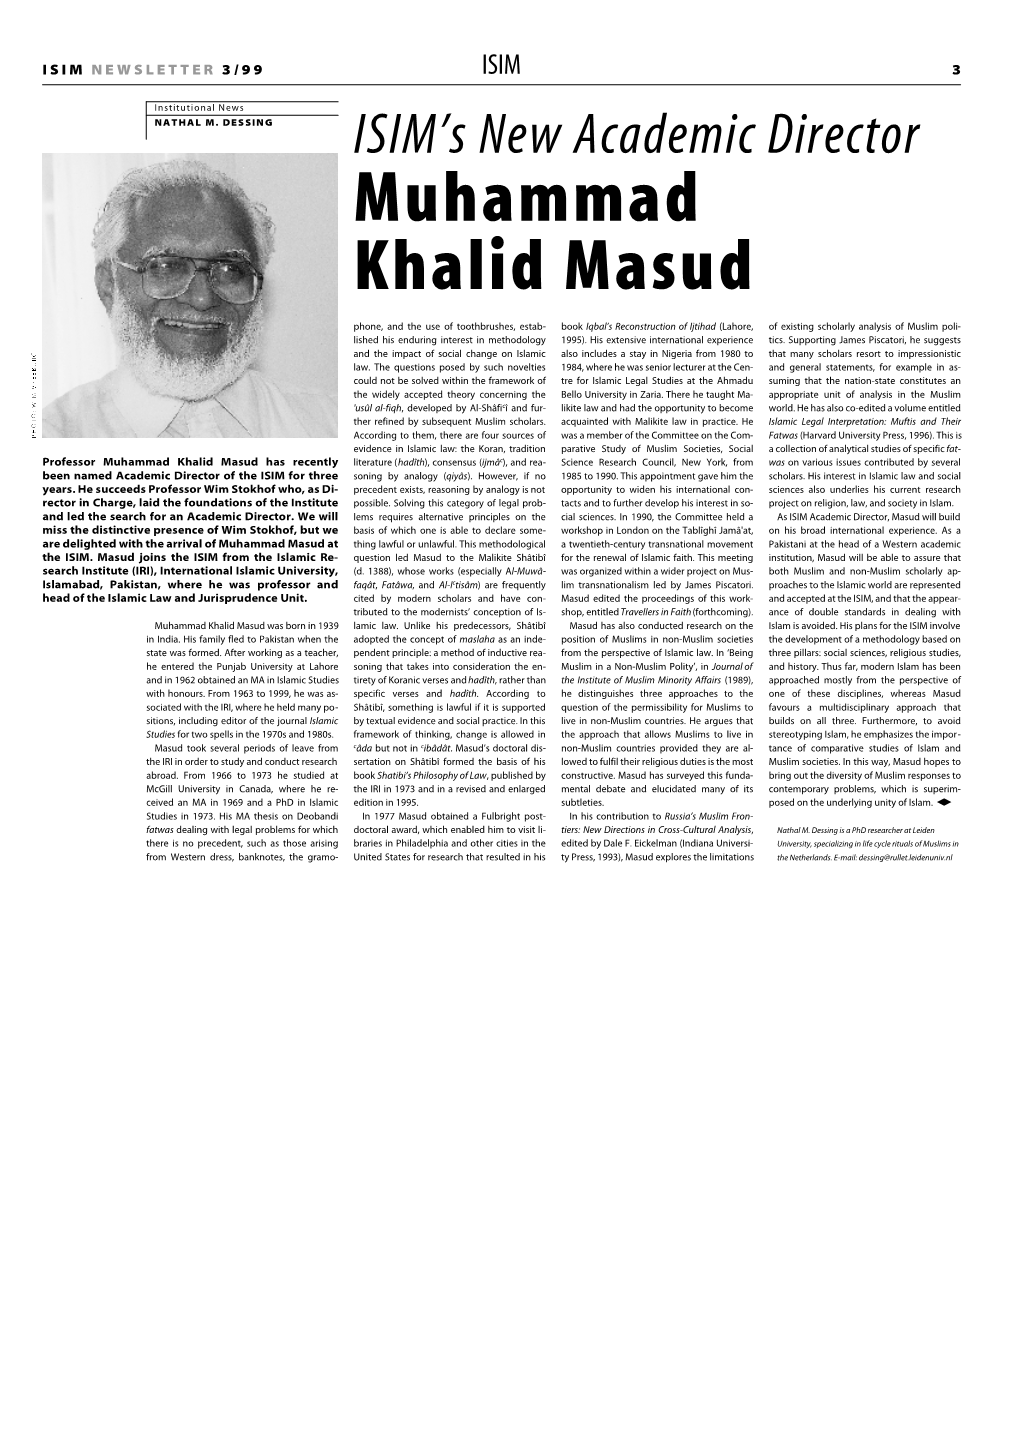 Muhammad Khalid Masud